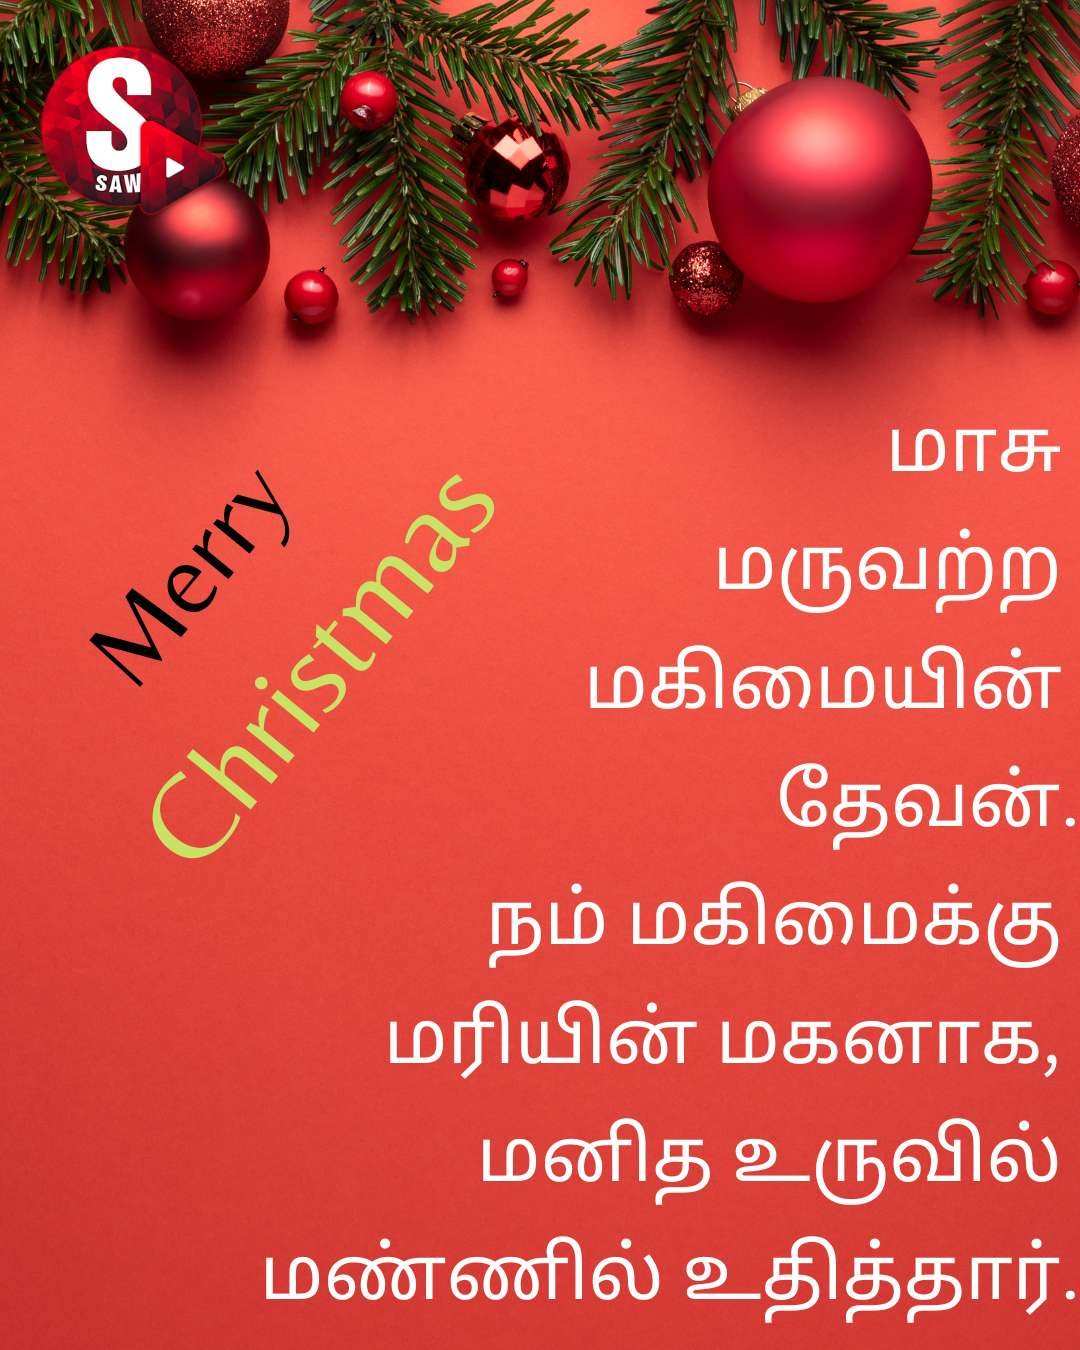 Christmas Wishes Tamil | அனைவர்க்கும் இனிய கிறிஸ்துமஸ் தின வாழ்த்துக்கள்